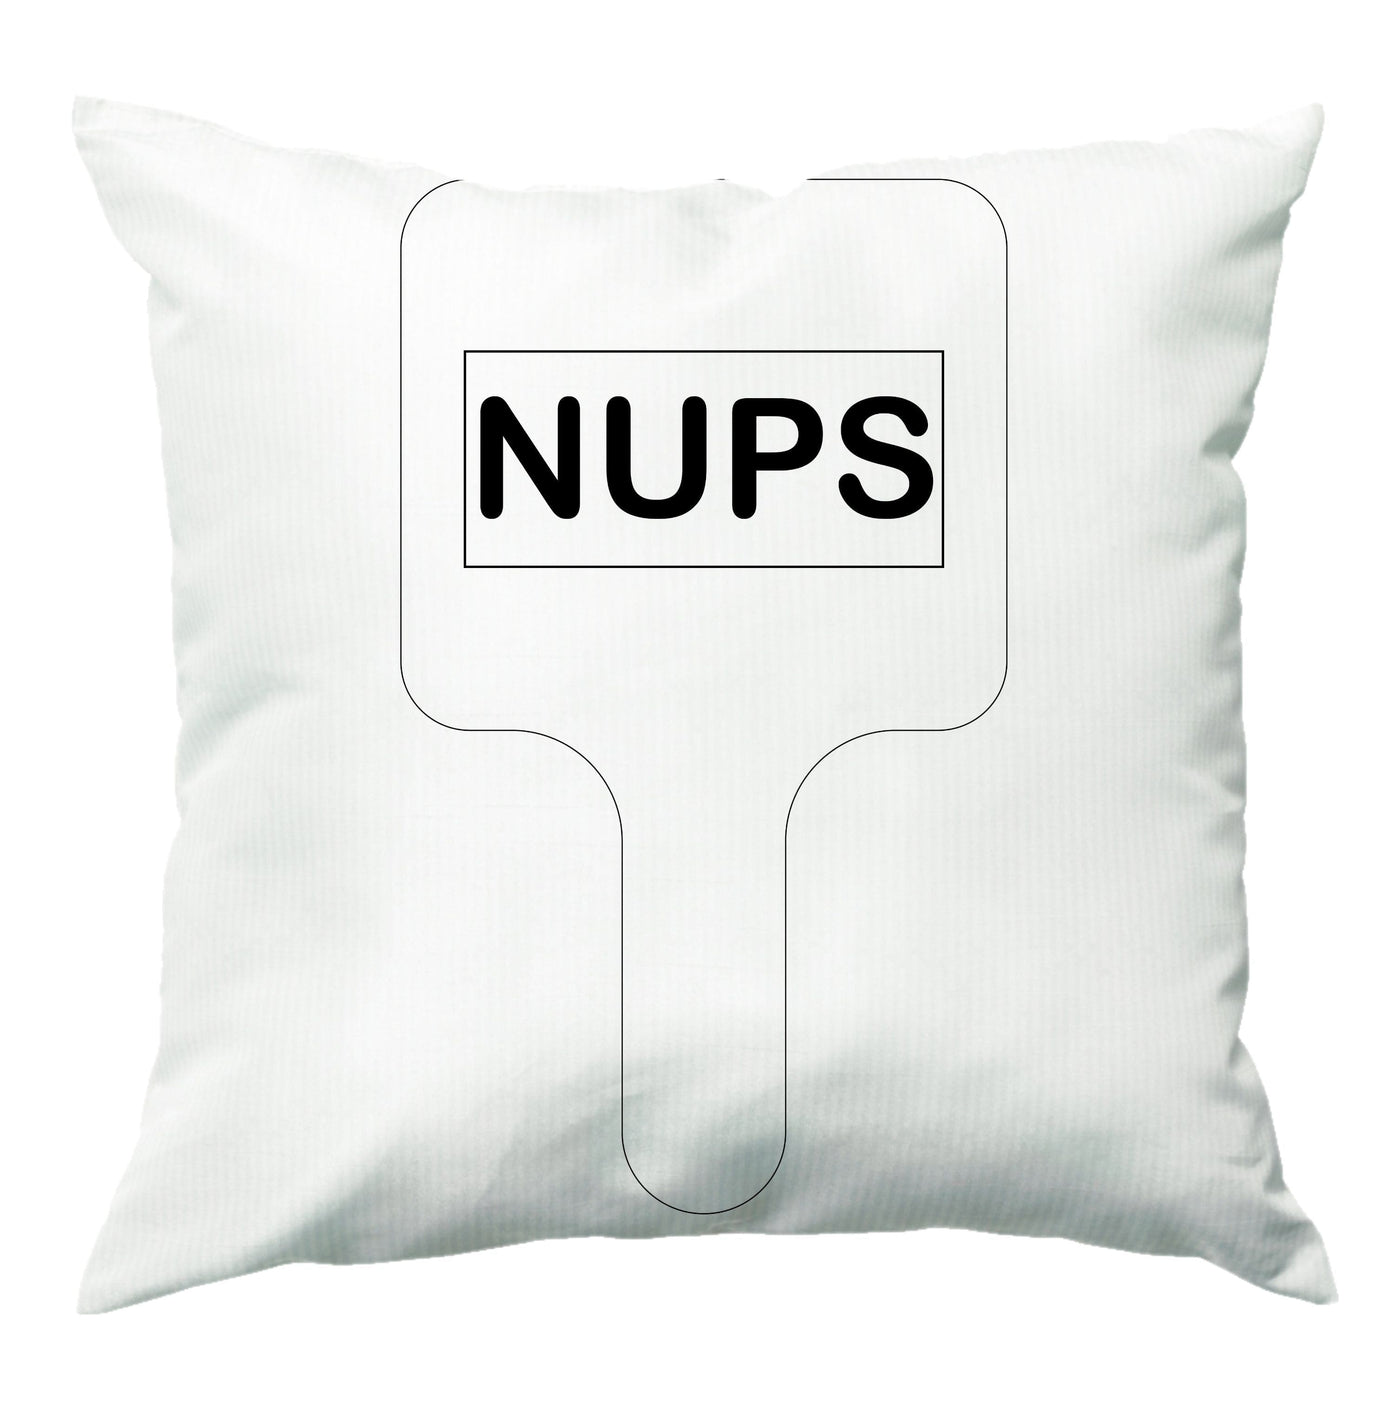 Nups - Brooklyn Nine-Nine Cushion